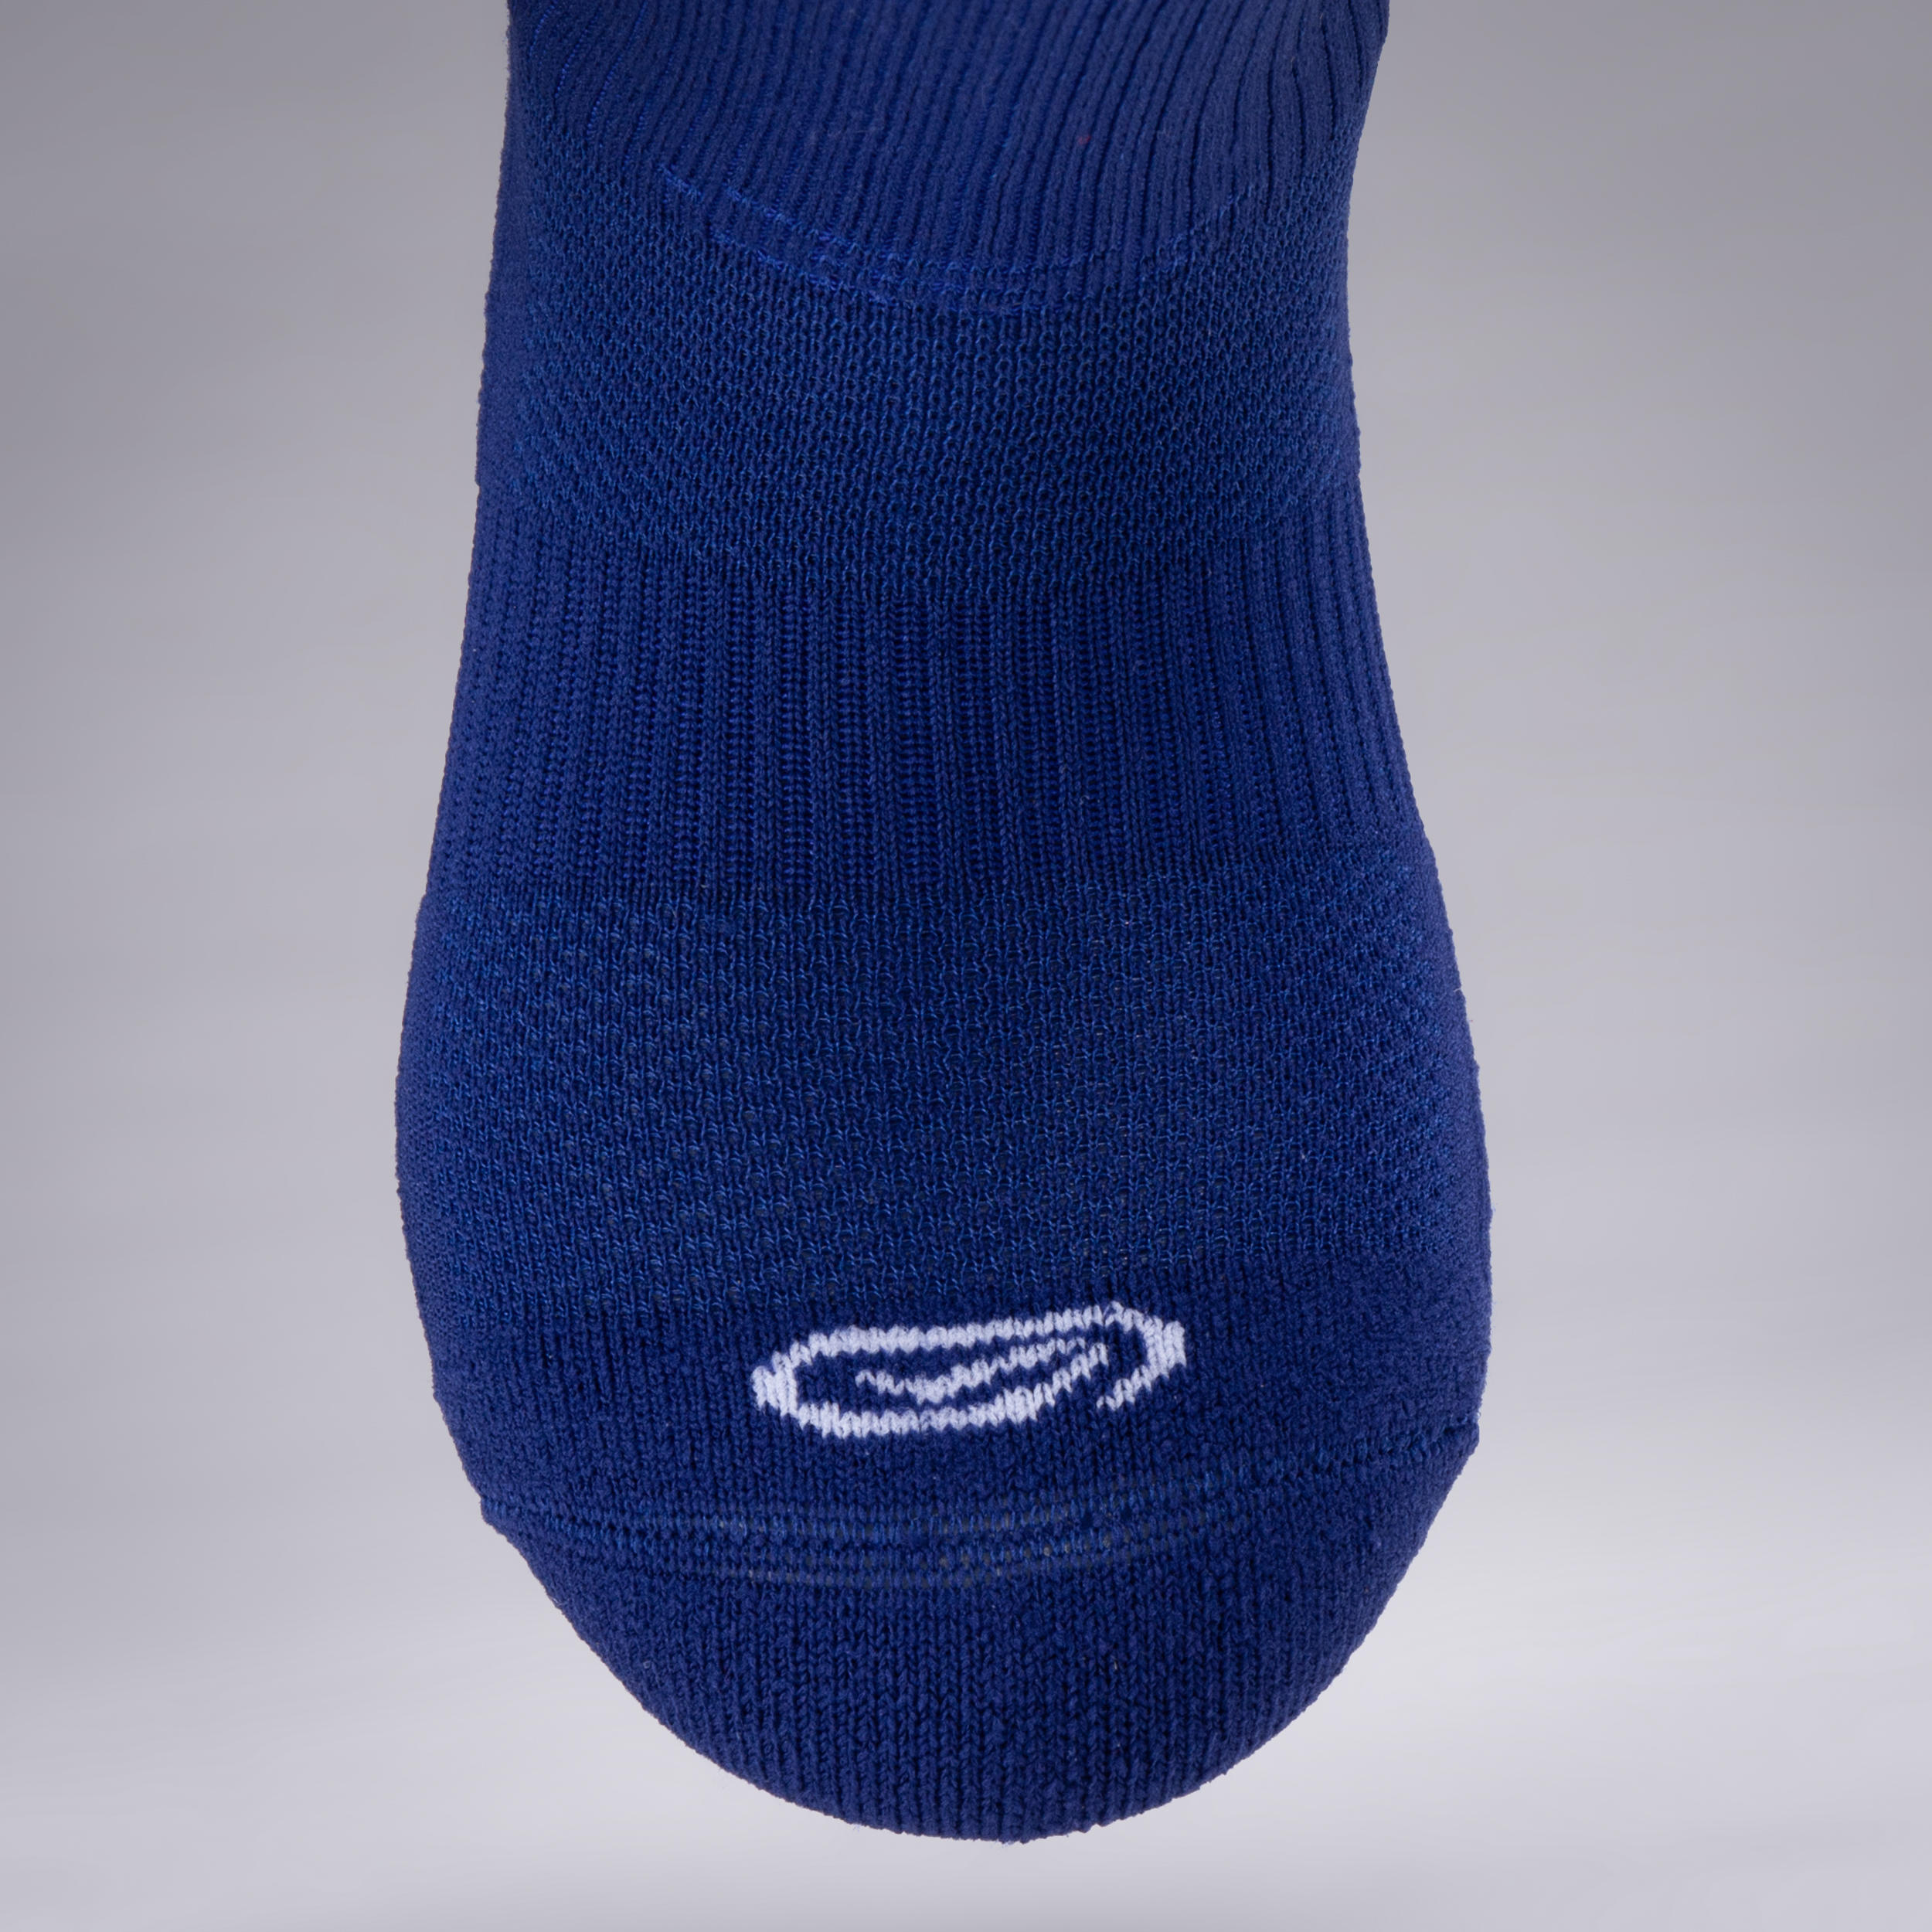 Confort children's athletics socks high pack of 2 ink blue 5/5